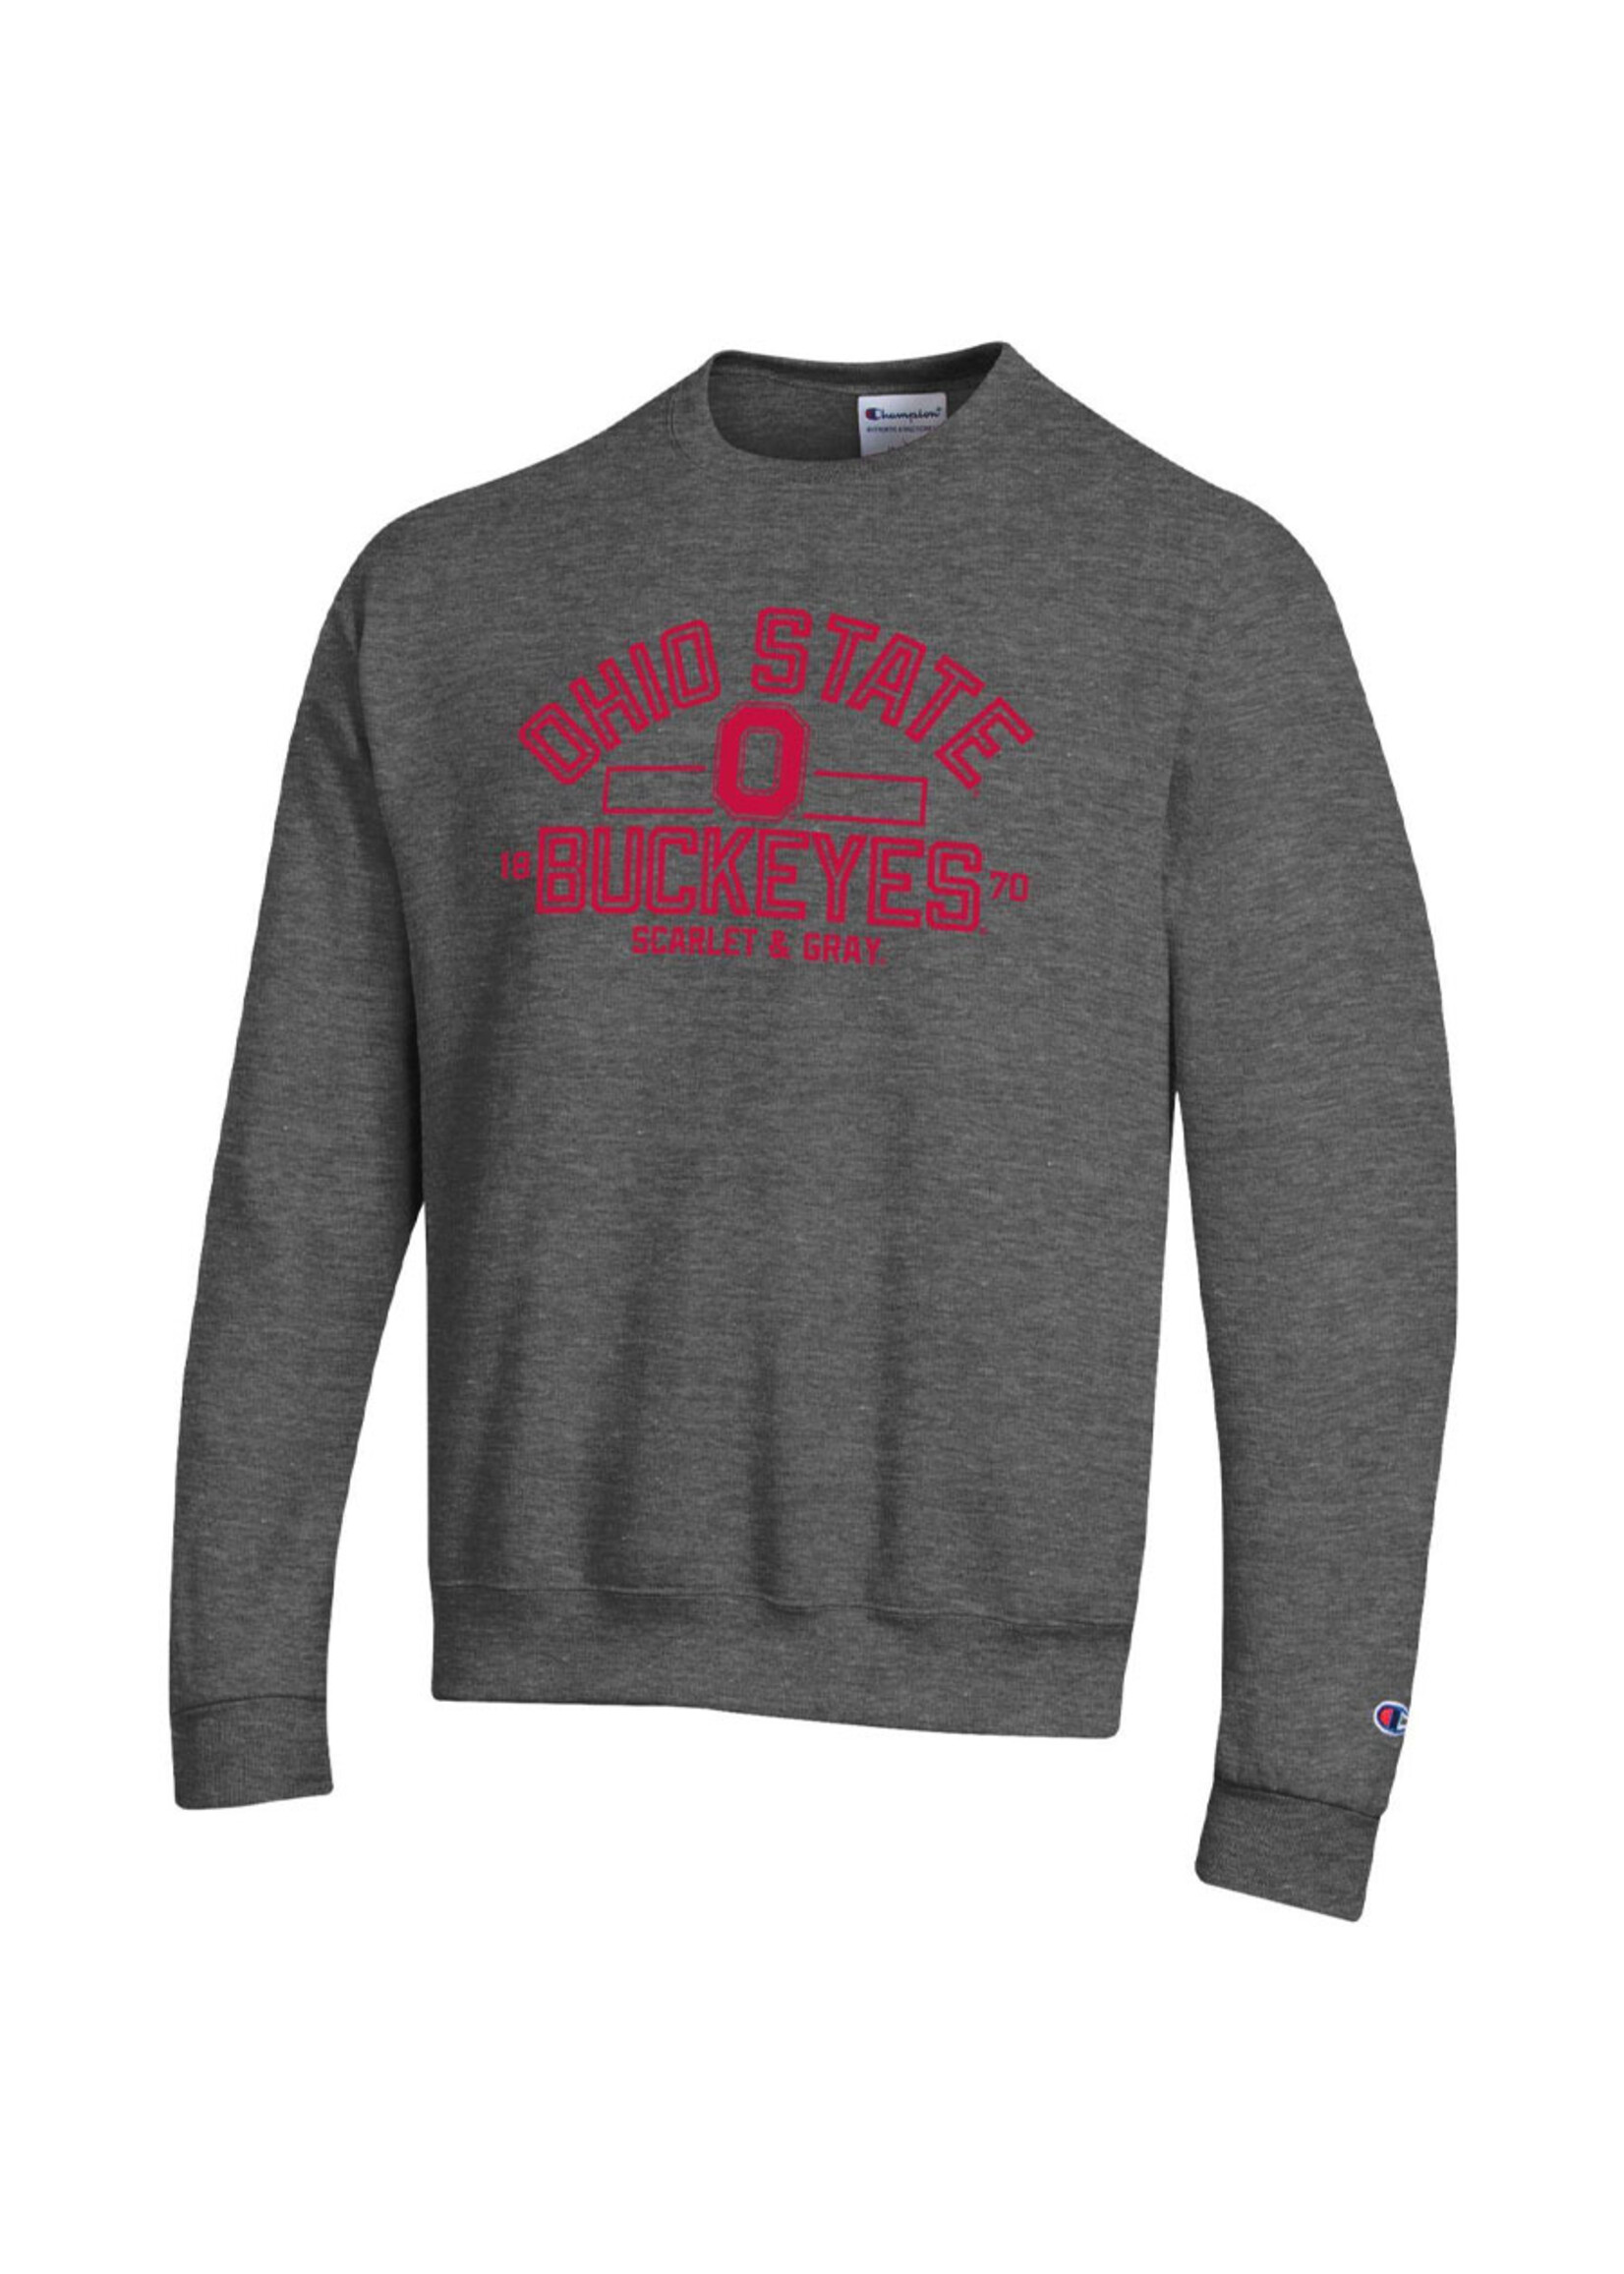 Ohio State Buckeyes Scarlet & Gray Sweatshirt